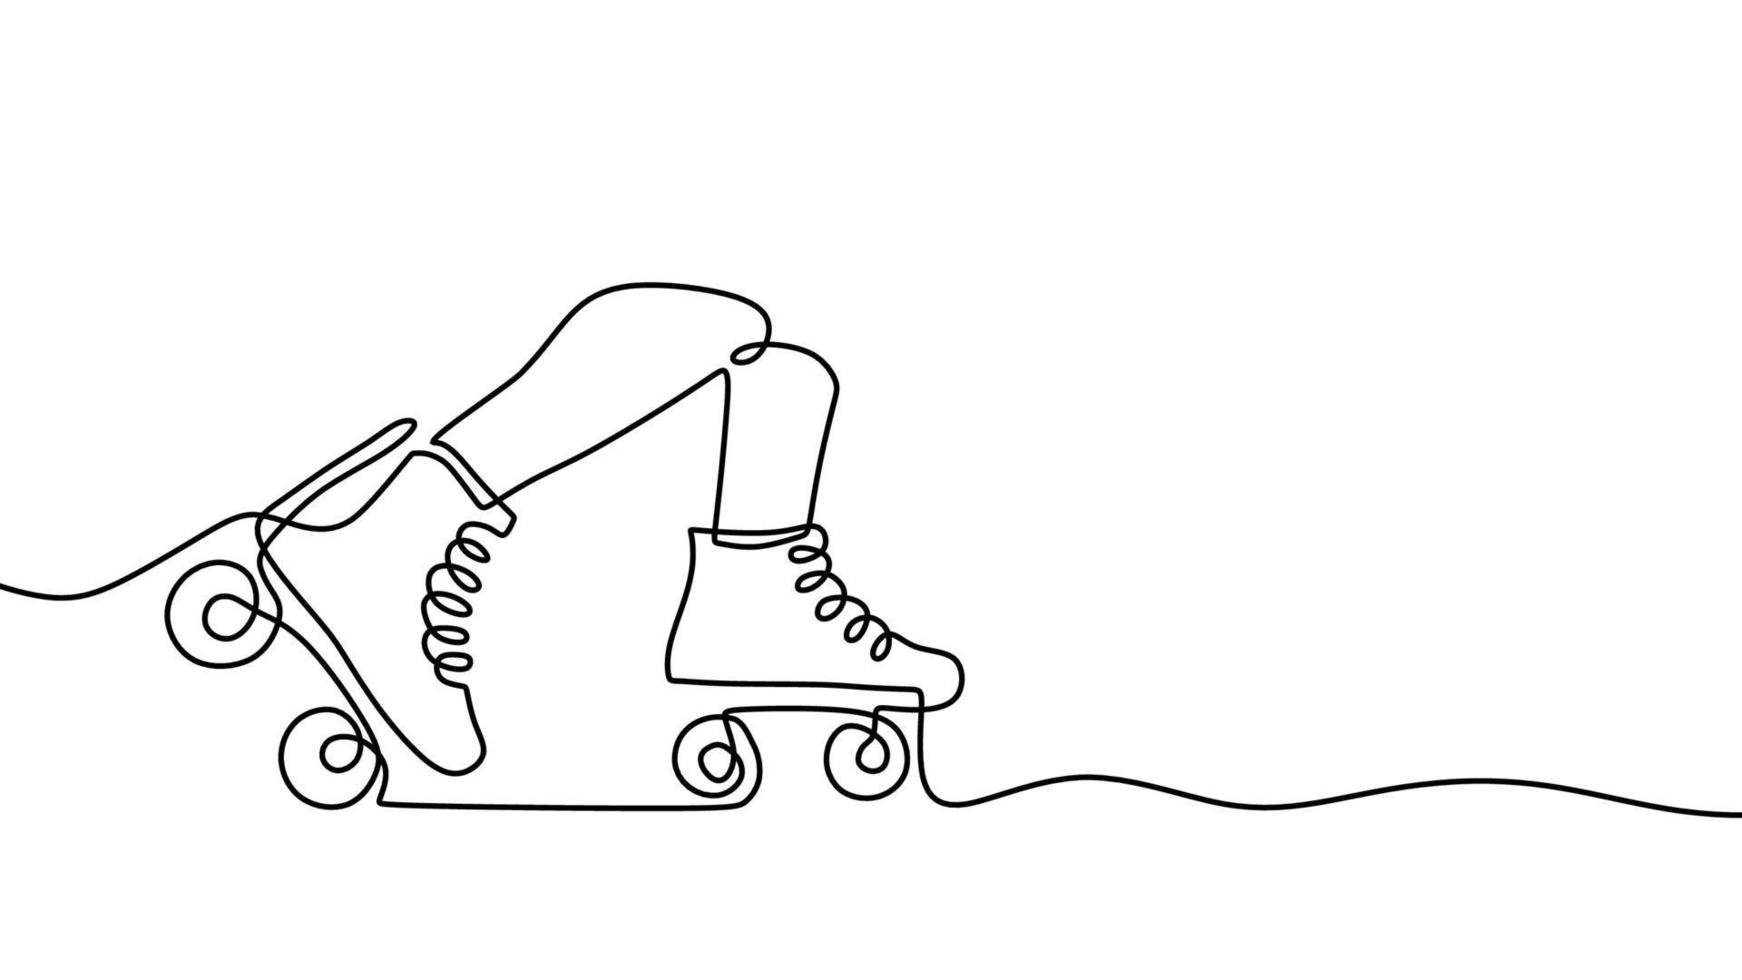 rolo sapatos 1 linha desenho, contínuo mão desenhado esporte tema vetor